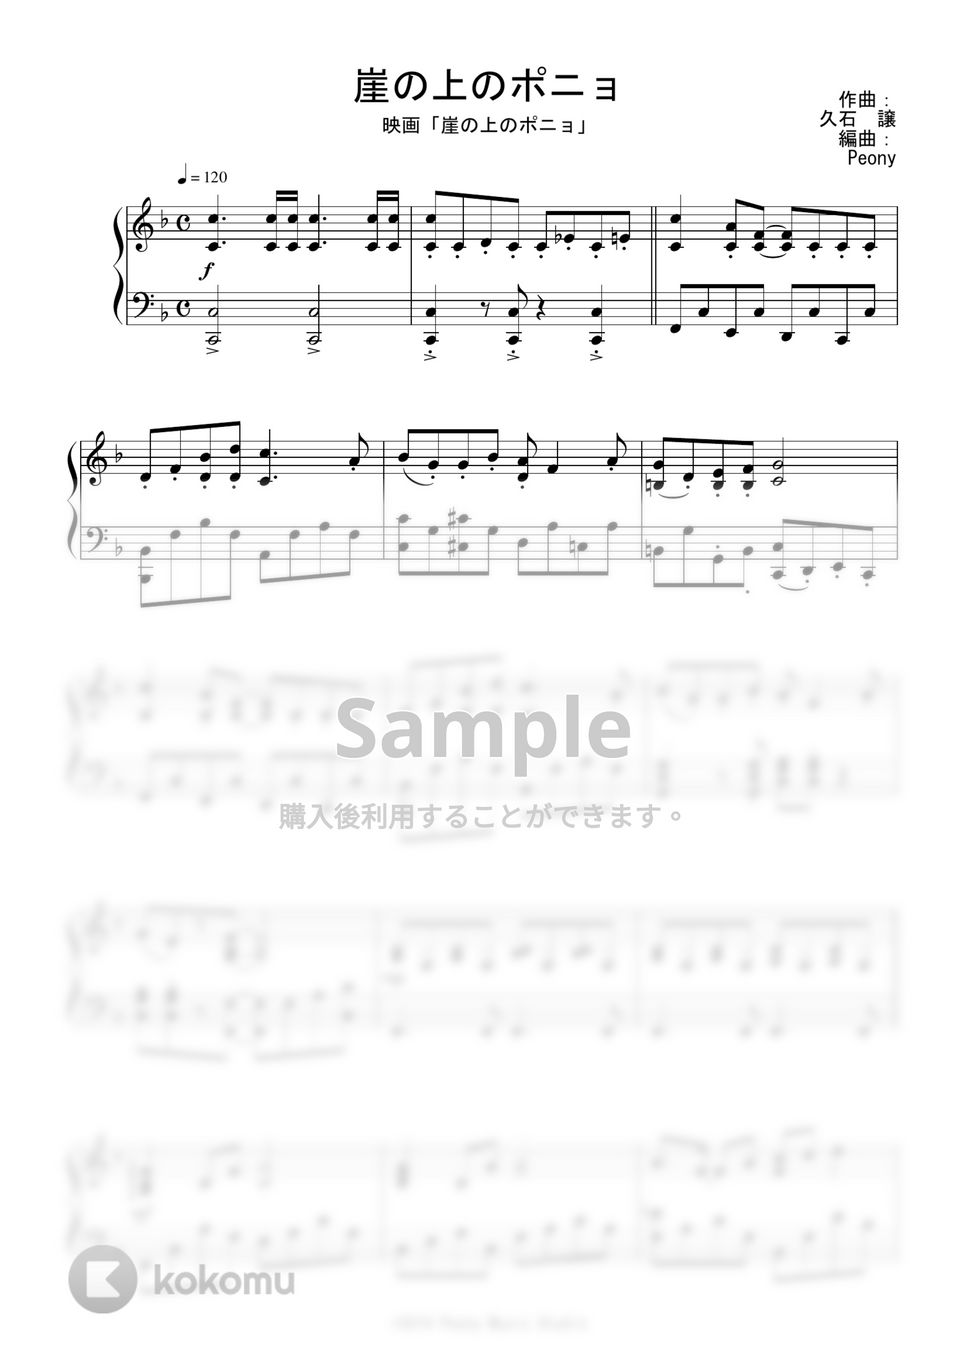 ジブリ映画『崖の上のポニョ』OST - 崖の上のポニョ (Short Ver.) by Peony